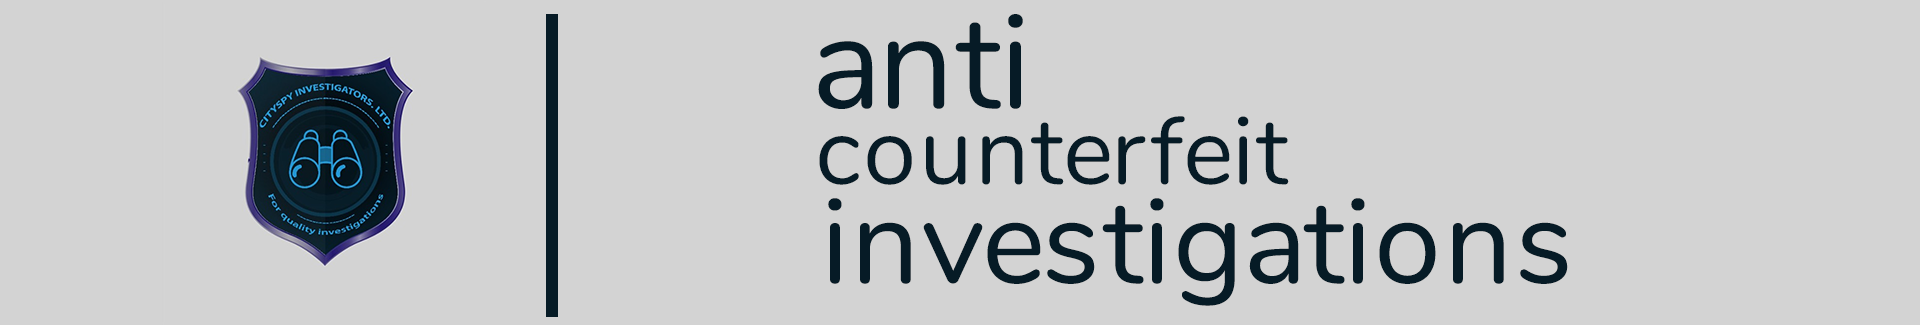 anti counterfeit